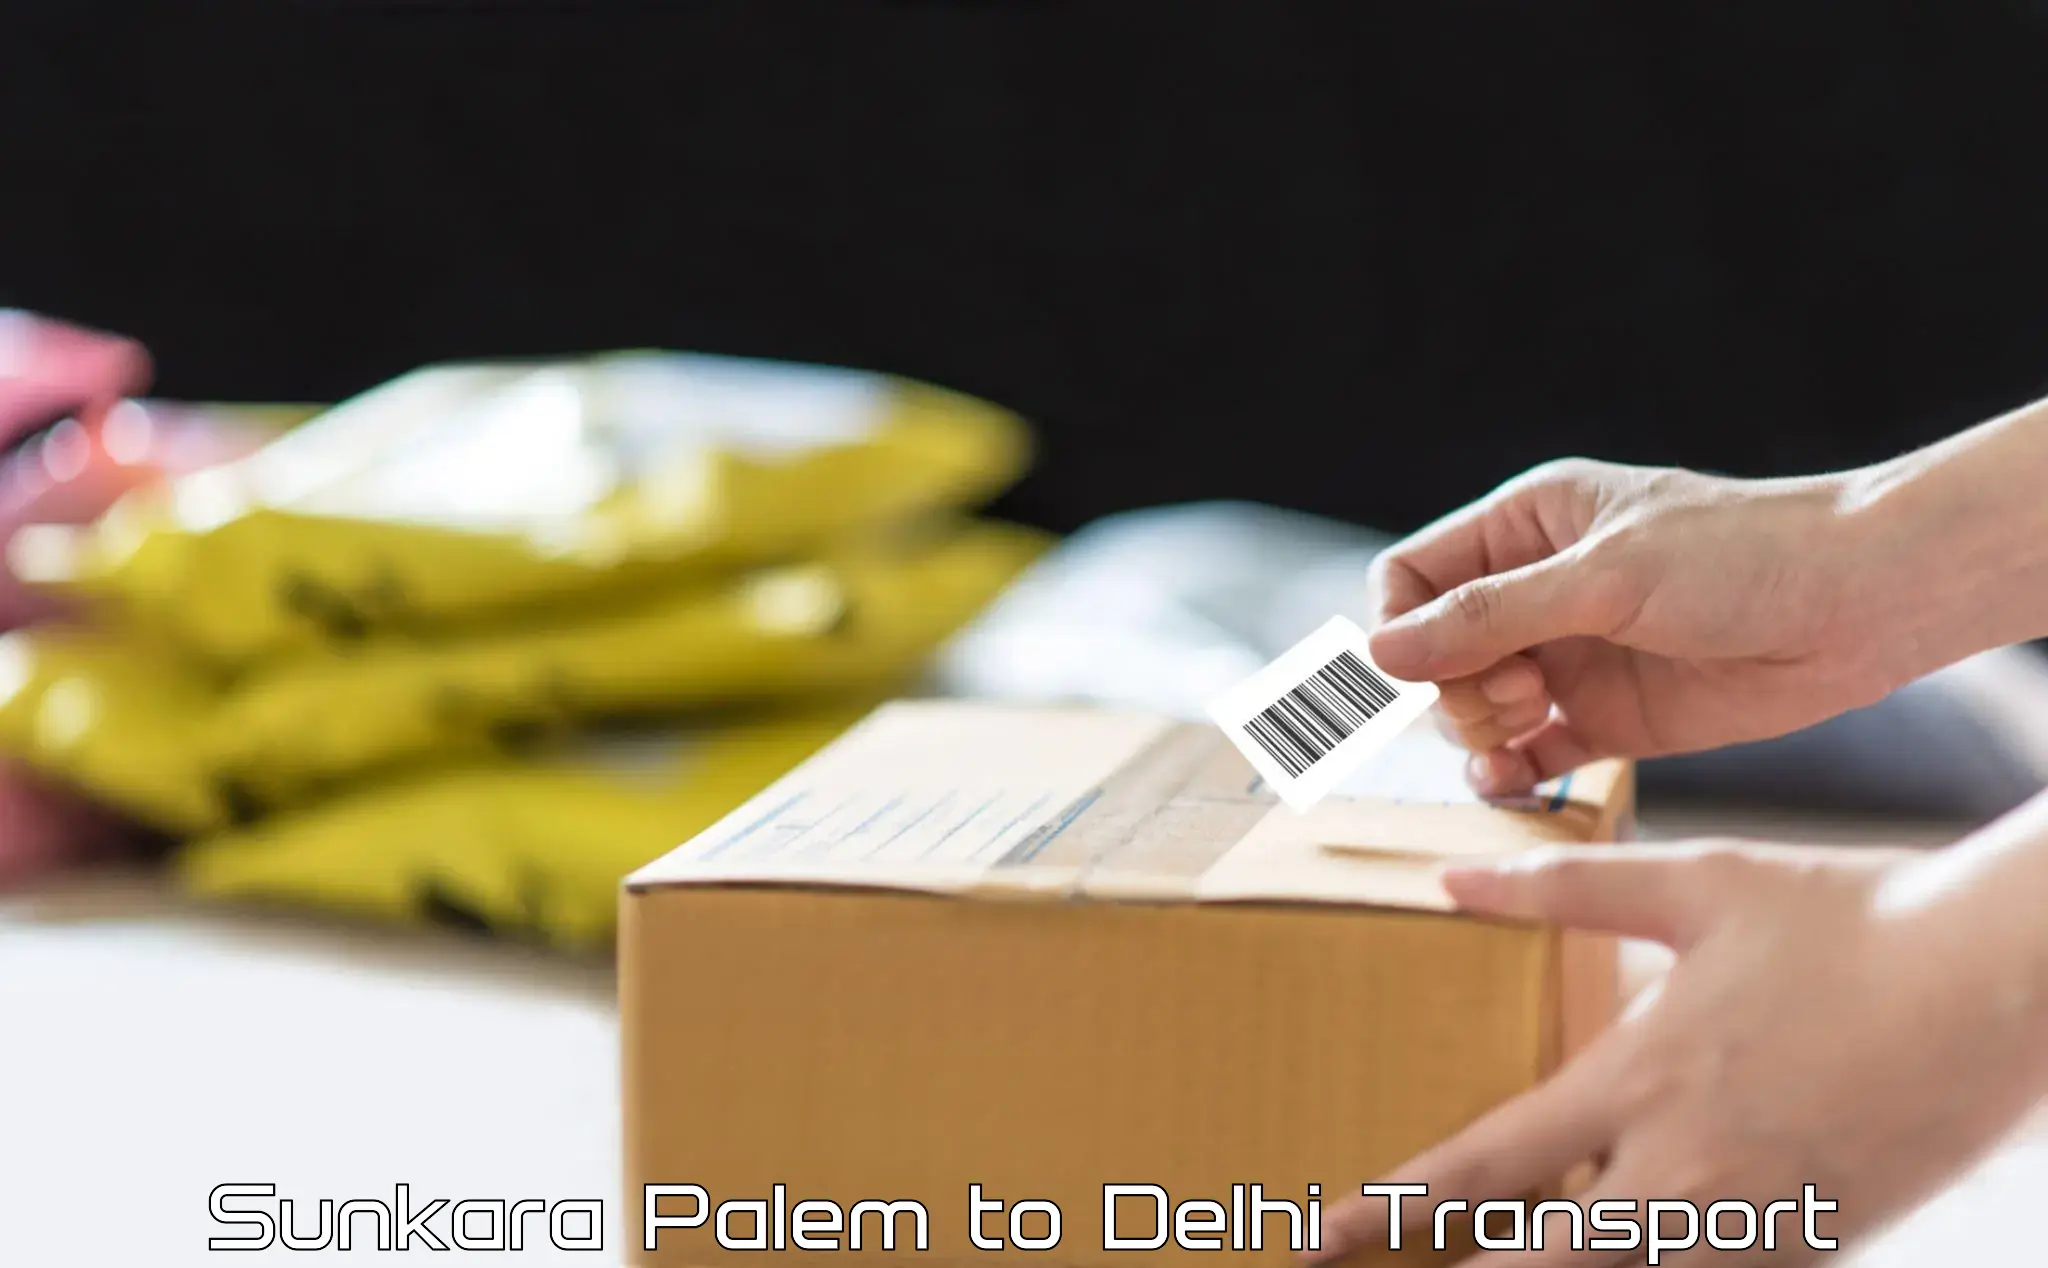 Daily transport service Sunkara Palem to Jamia Millia Islamia New Delhi